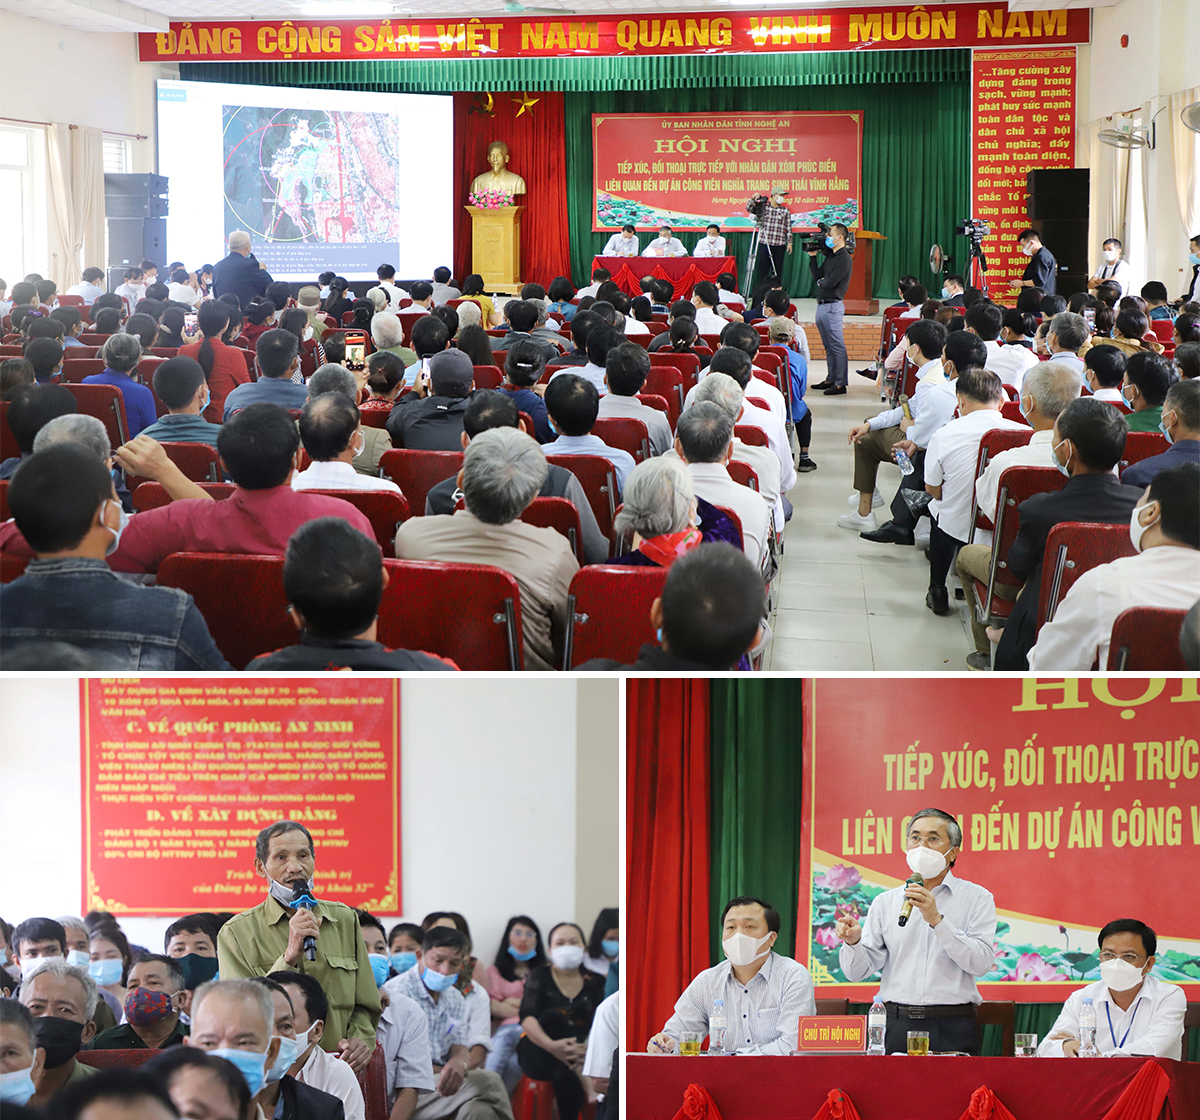 UBND tỉnh Nghệ An tổ chức hội nghị đối thoại, trả lời những kiến nghị của công dân liên quan đến triển khai dự án công viên sinh thái vĩnh hằng tại xã Hưng Tây.